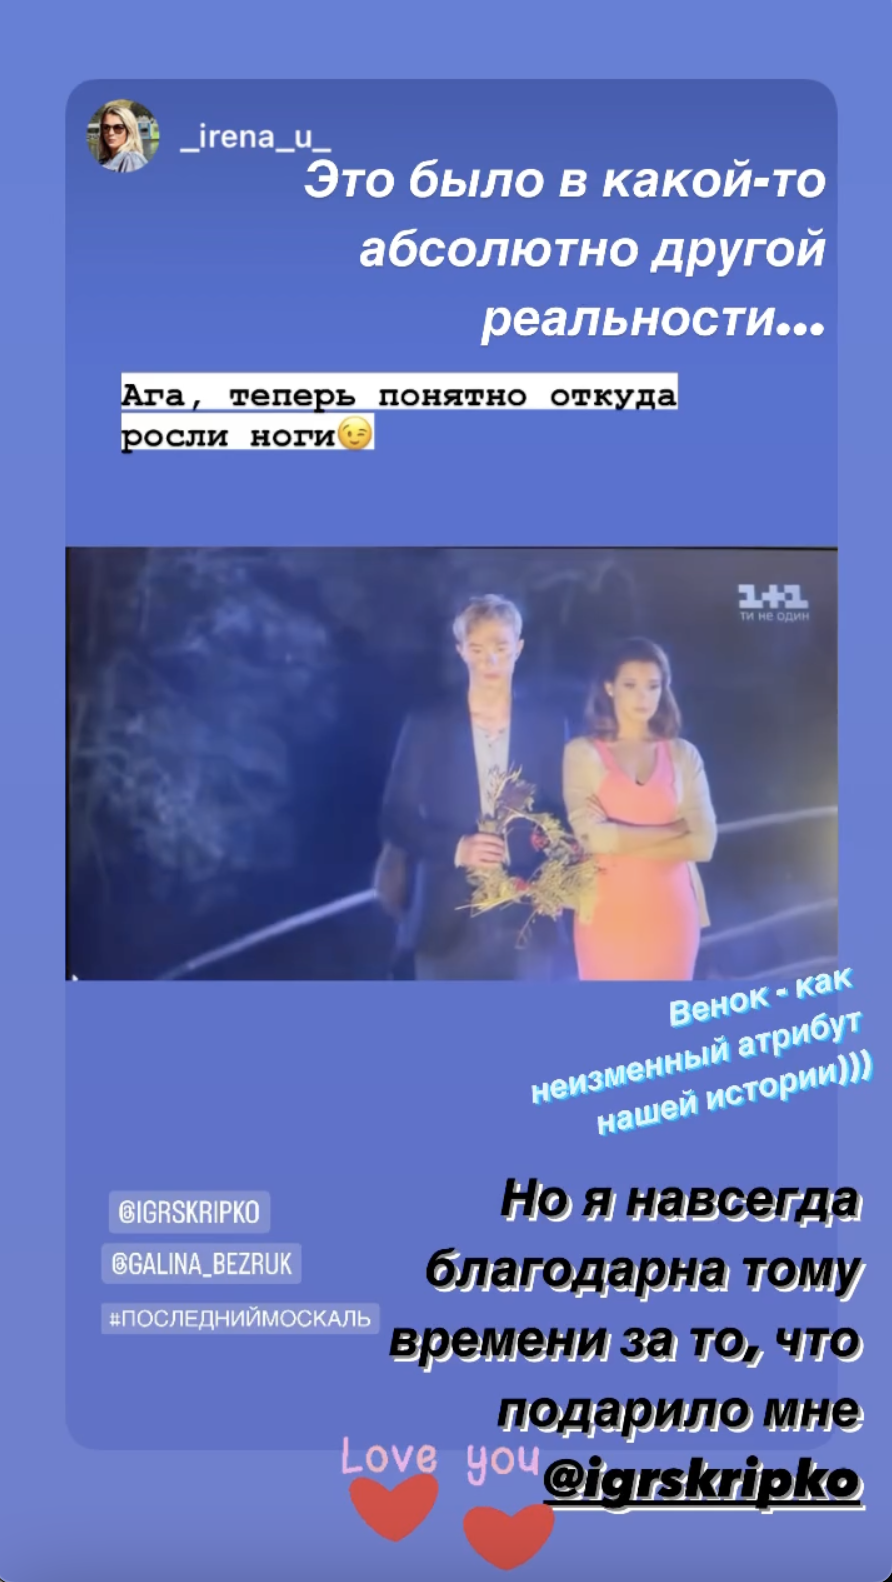 Зрадниця Галина Безрук несподівано згадала про серіал "Останній москаль" і назвала життя в Україні "іншою реальністю"